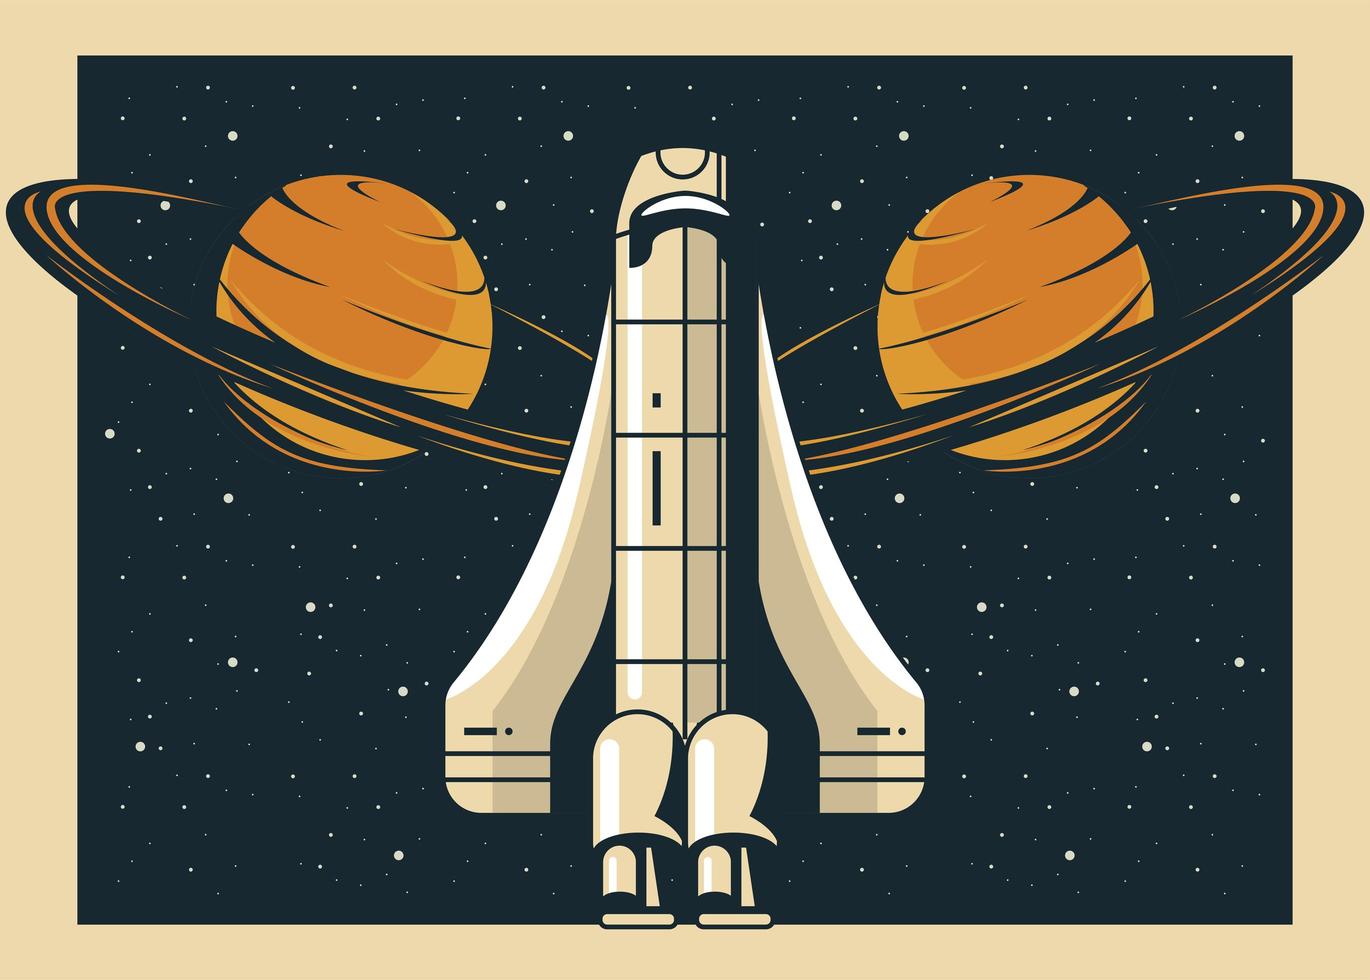 nave espacial e planetas de Saturno em pôster estilo vintage vetor